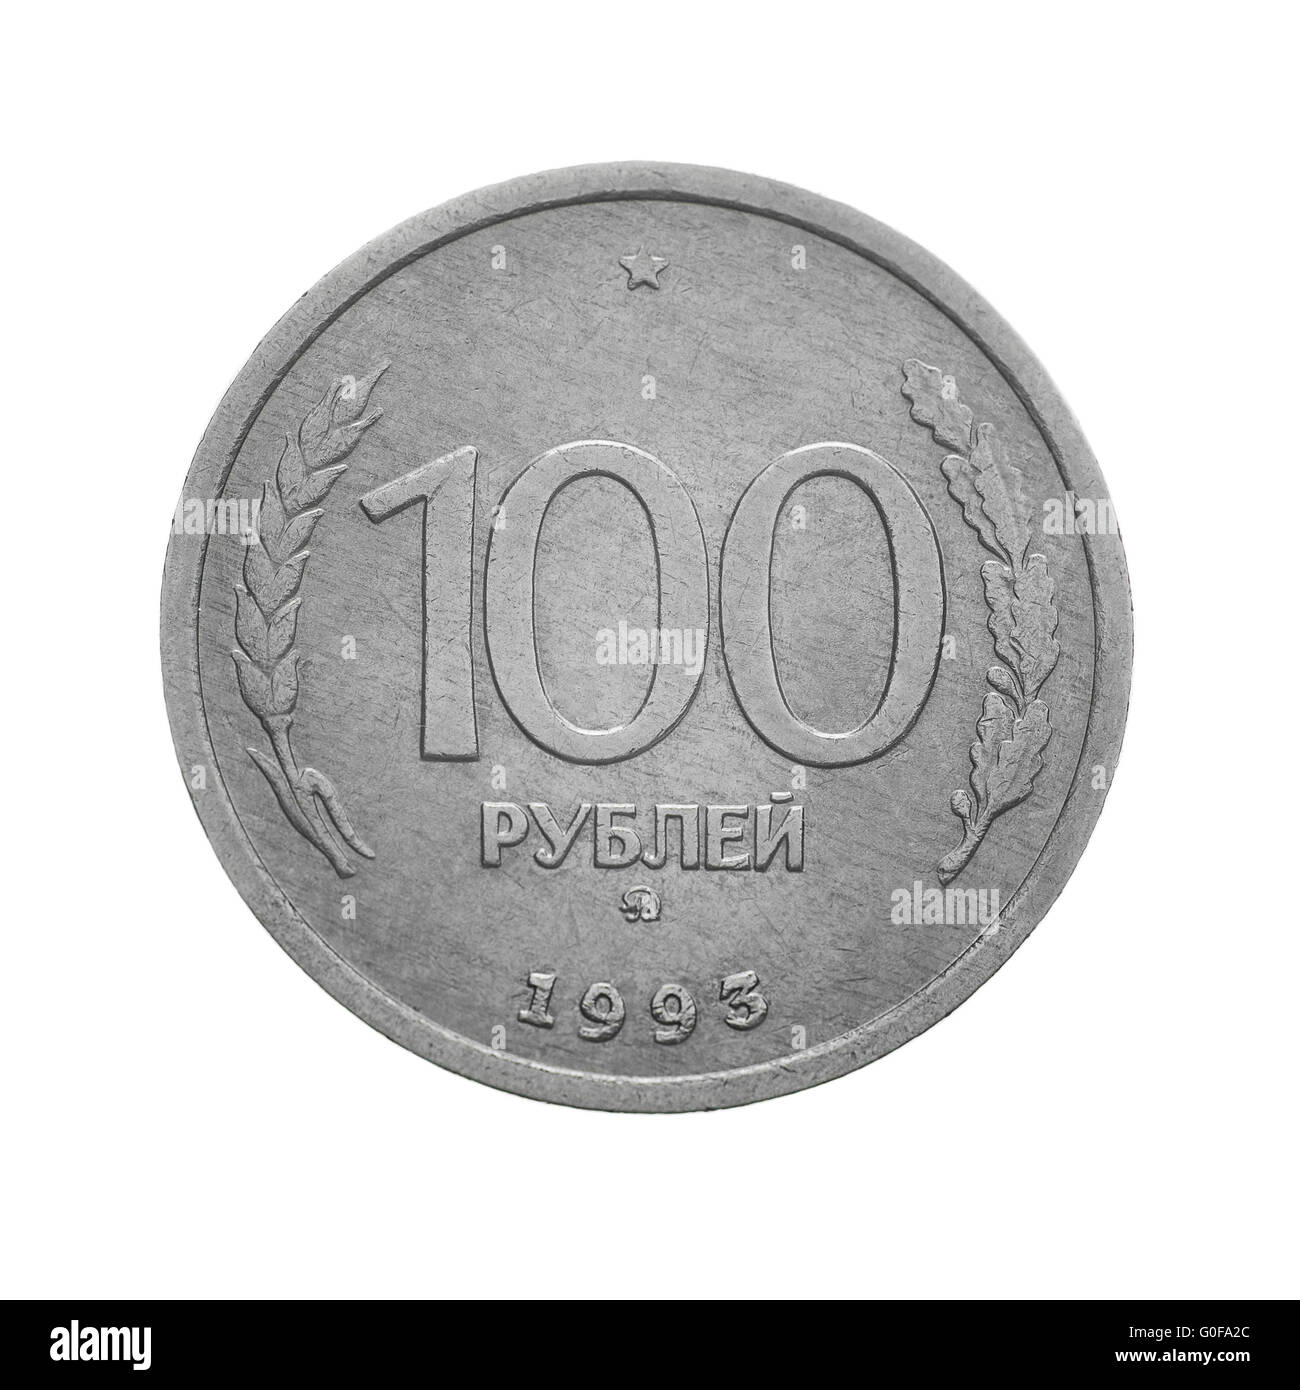 140 российских рублей. Rus 100 rubl. Бесконечно рублей.